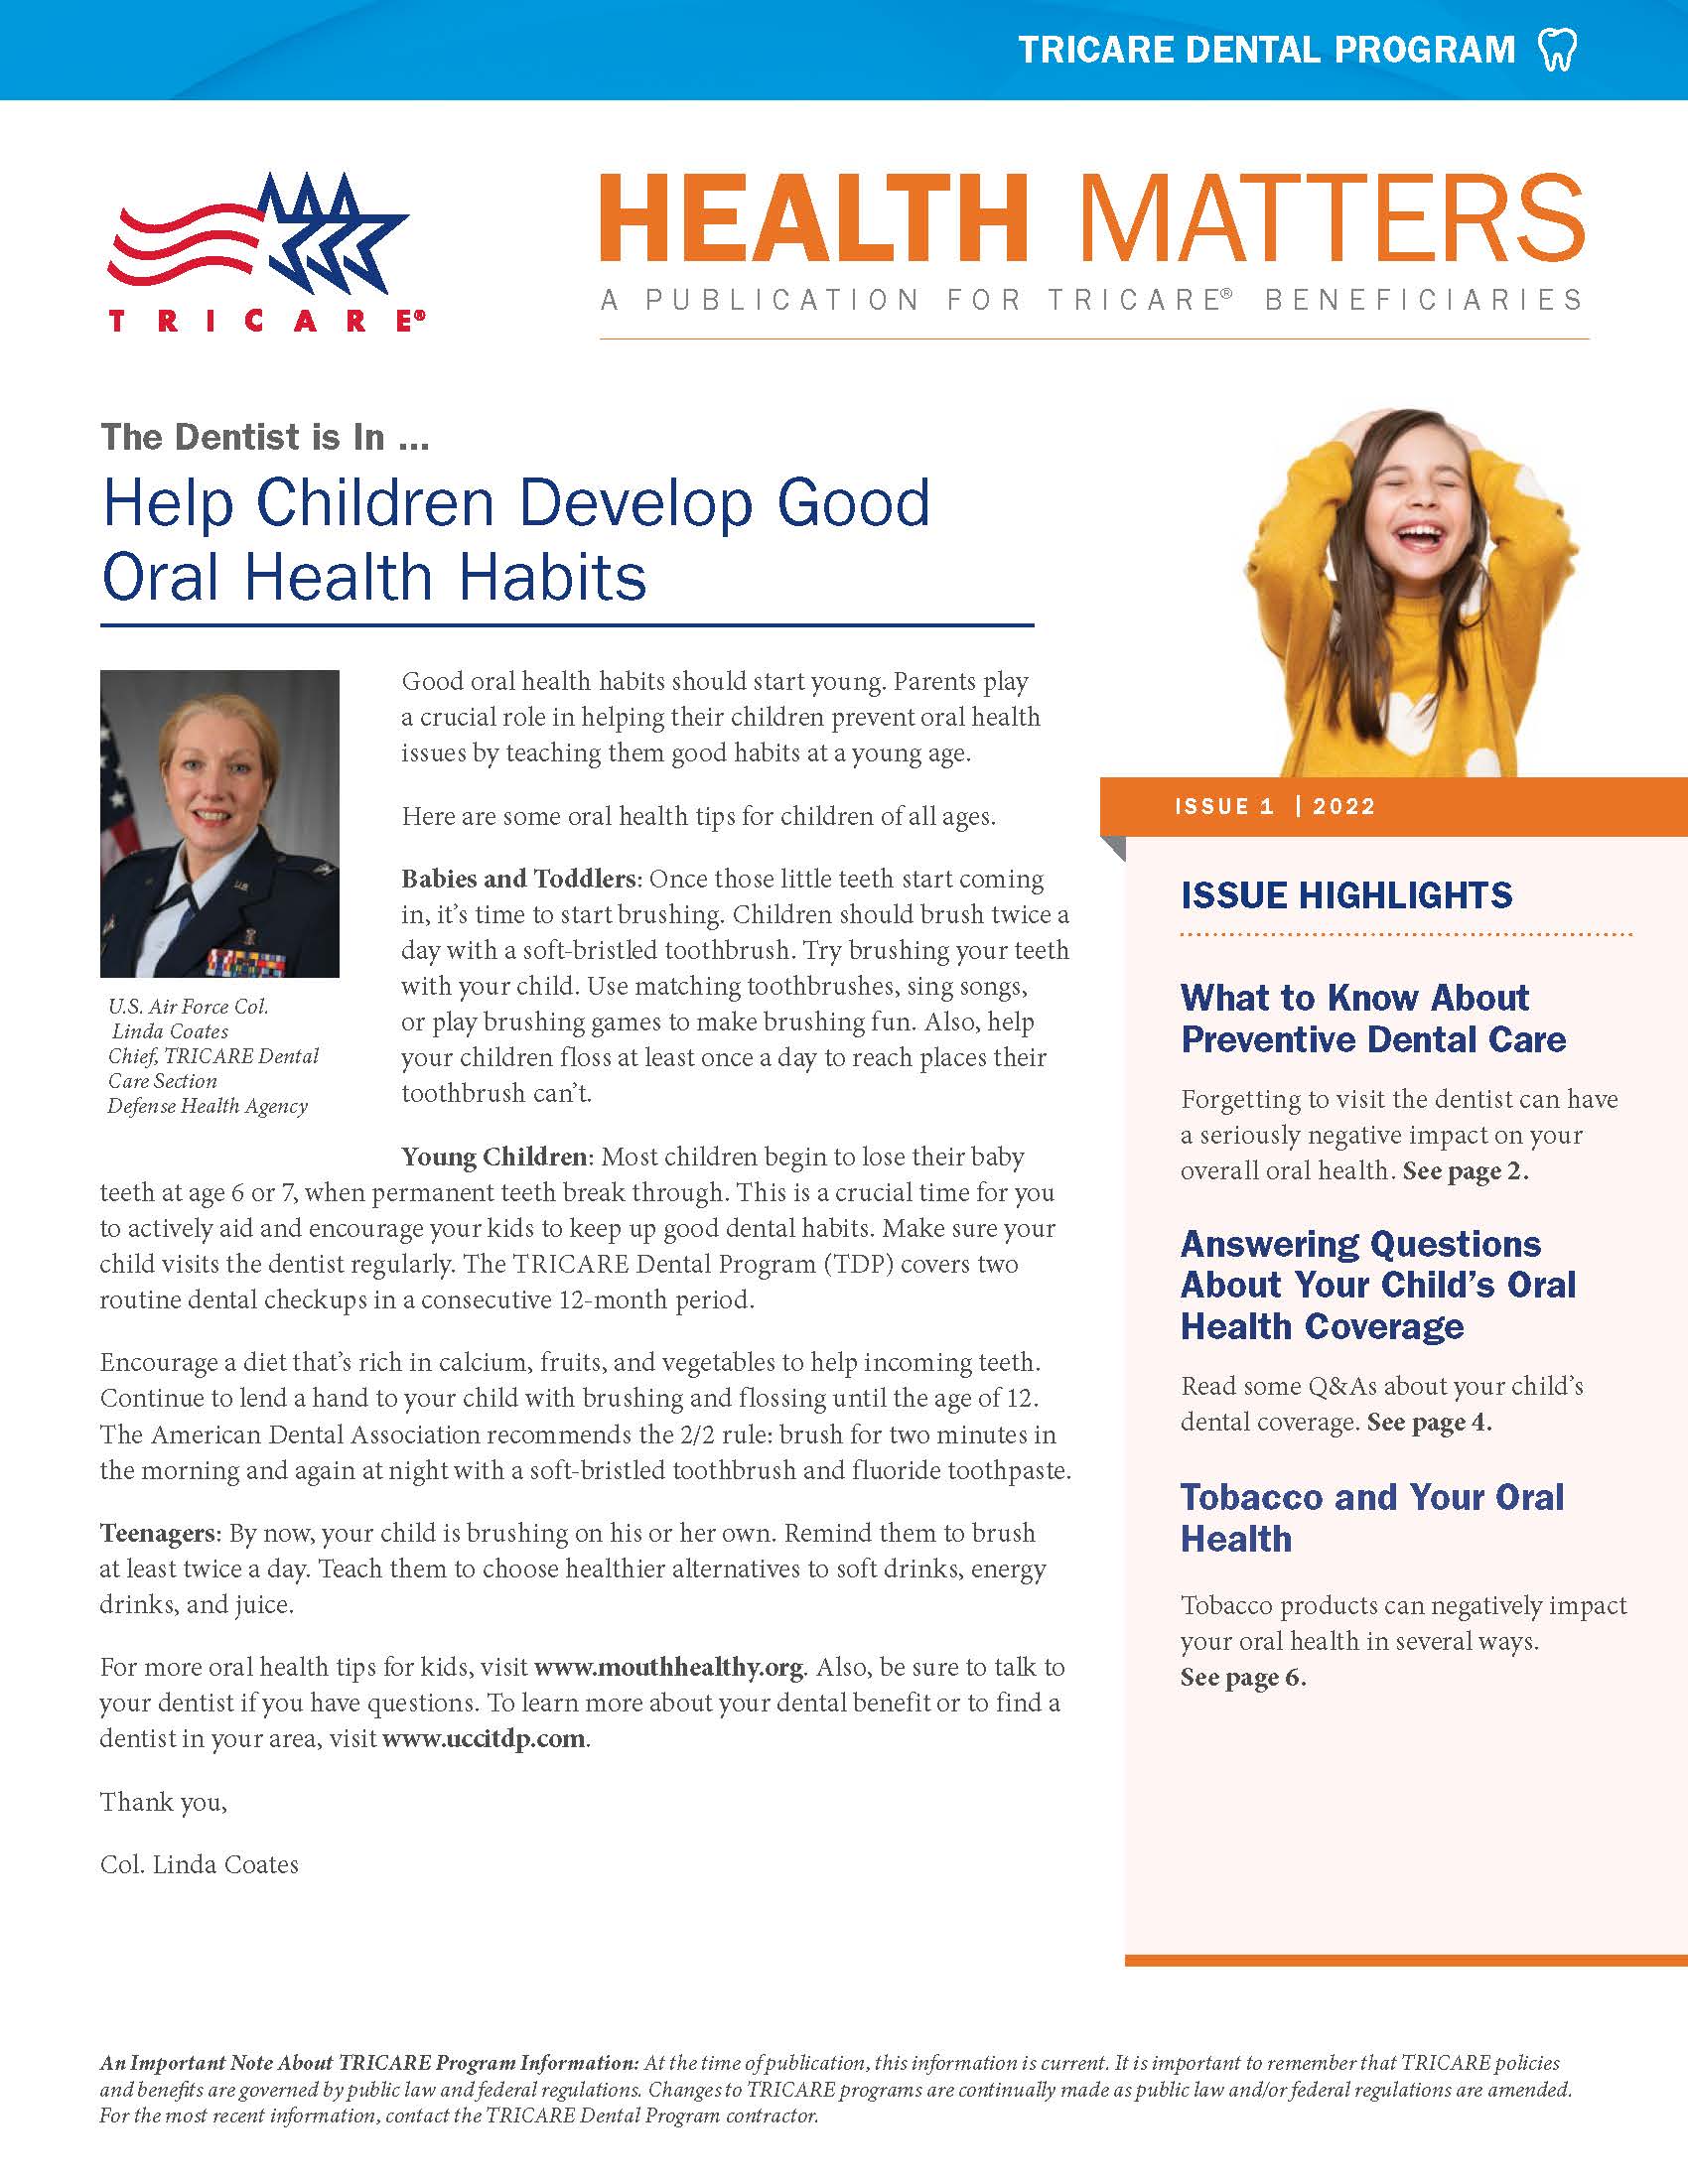 Help Children Develop Good Oral Health Habits